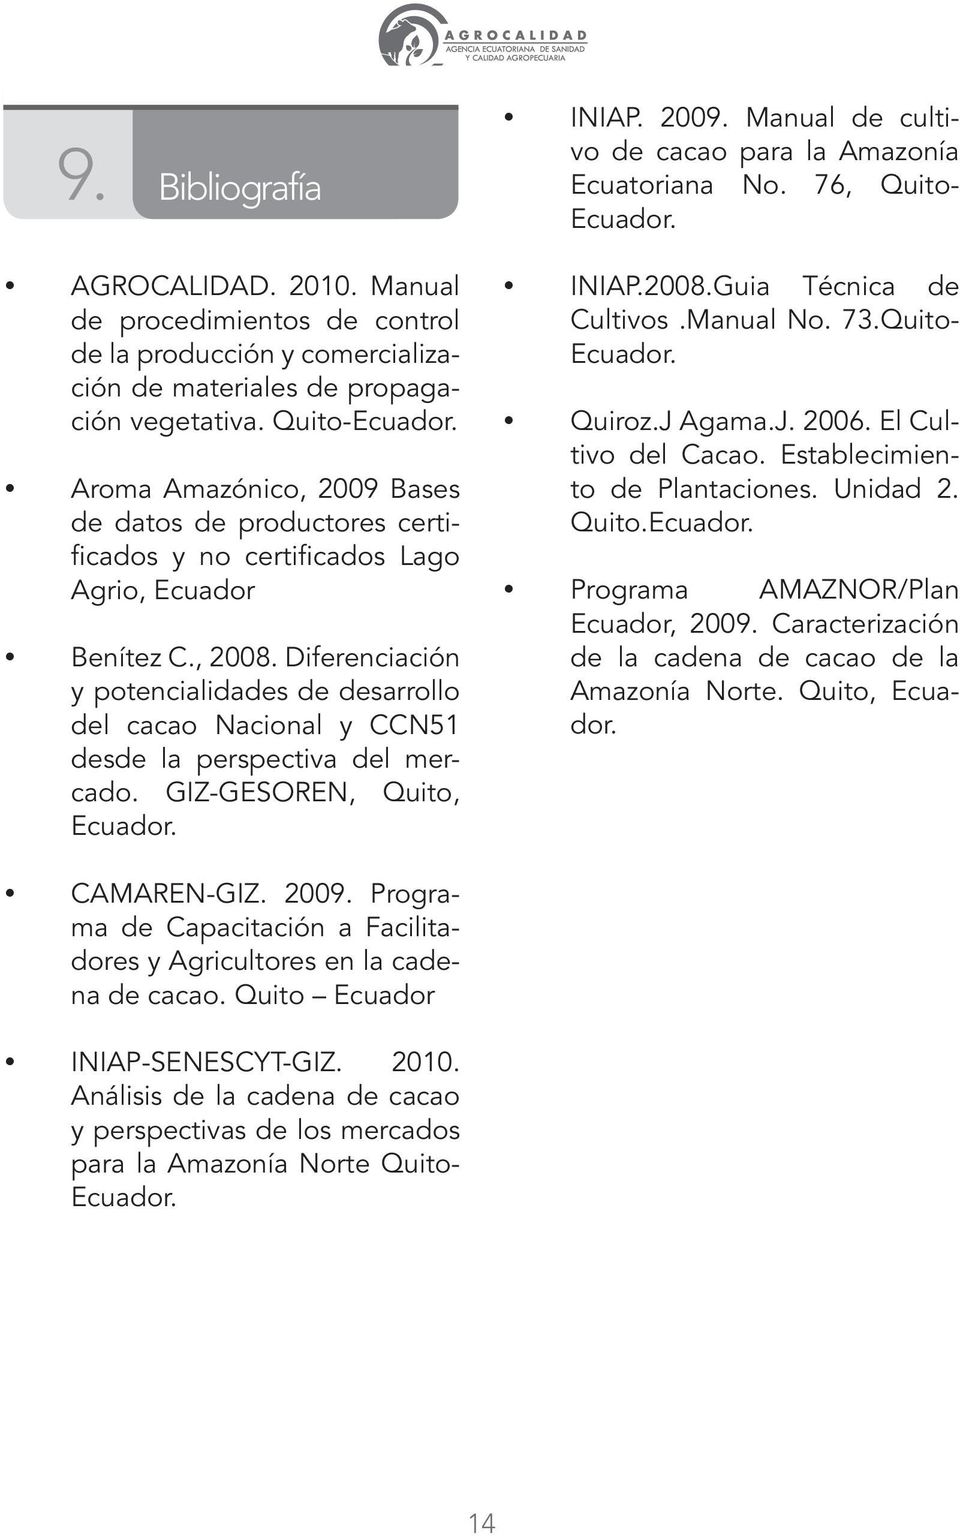 Diferenciación y potencialidades de desarrollo del cacao Nacional y CCN51 desde la perspectiva del mercado. GIZ-GESOREN, Quito, Ecuador. INIAP. 2009.